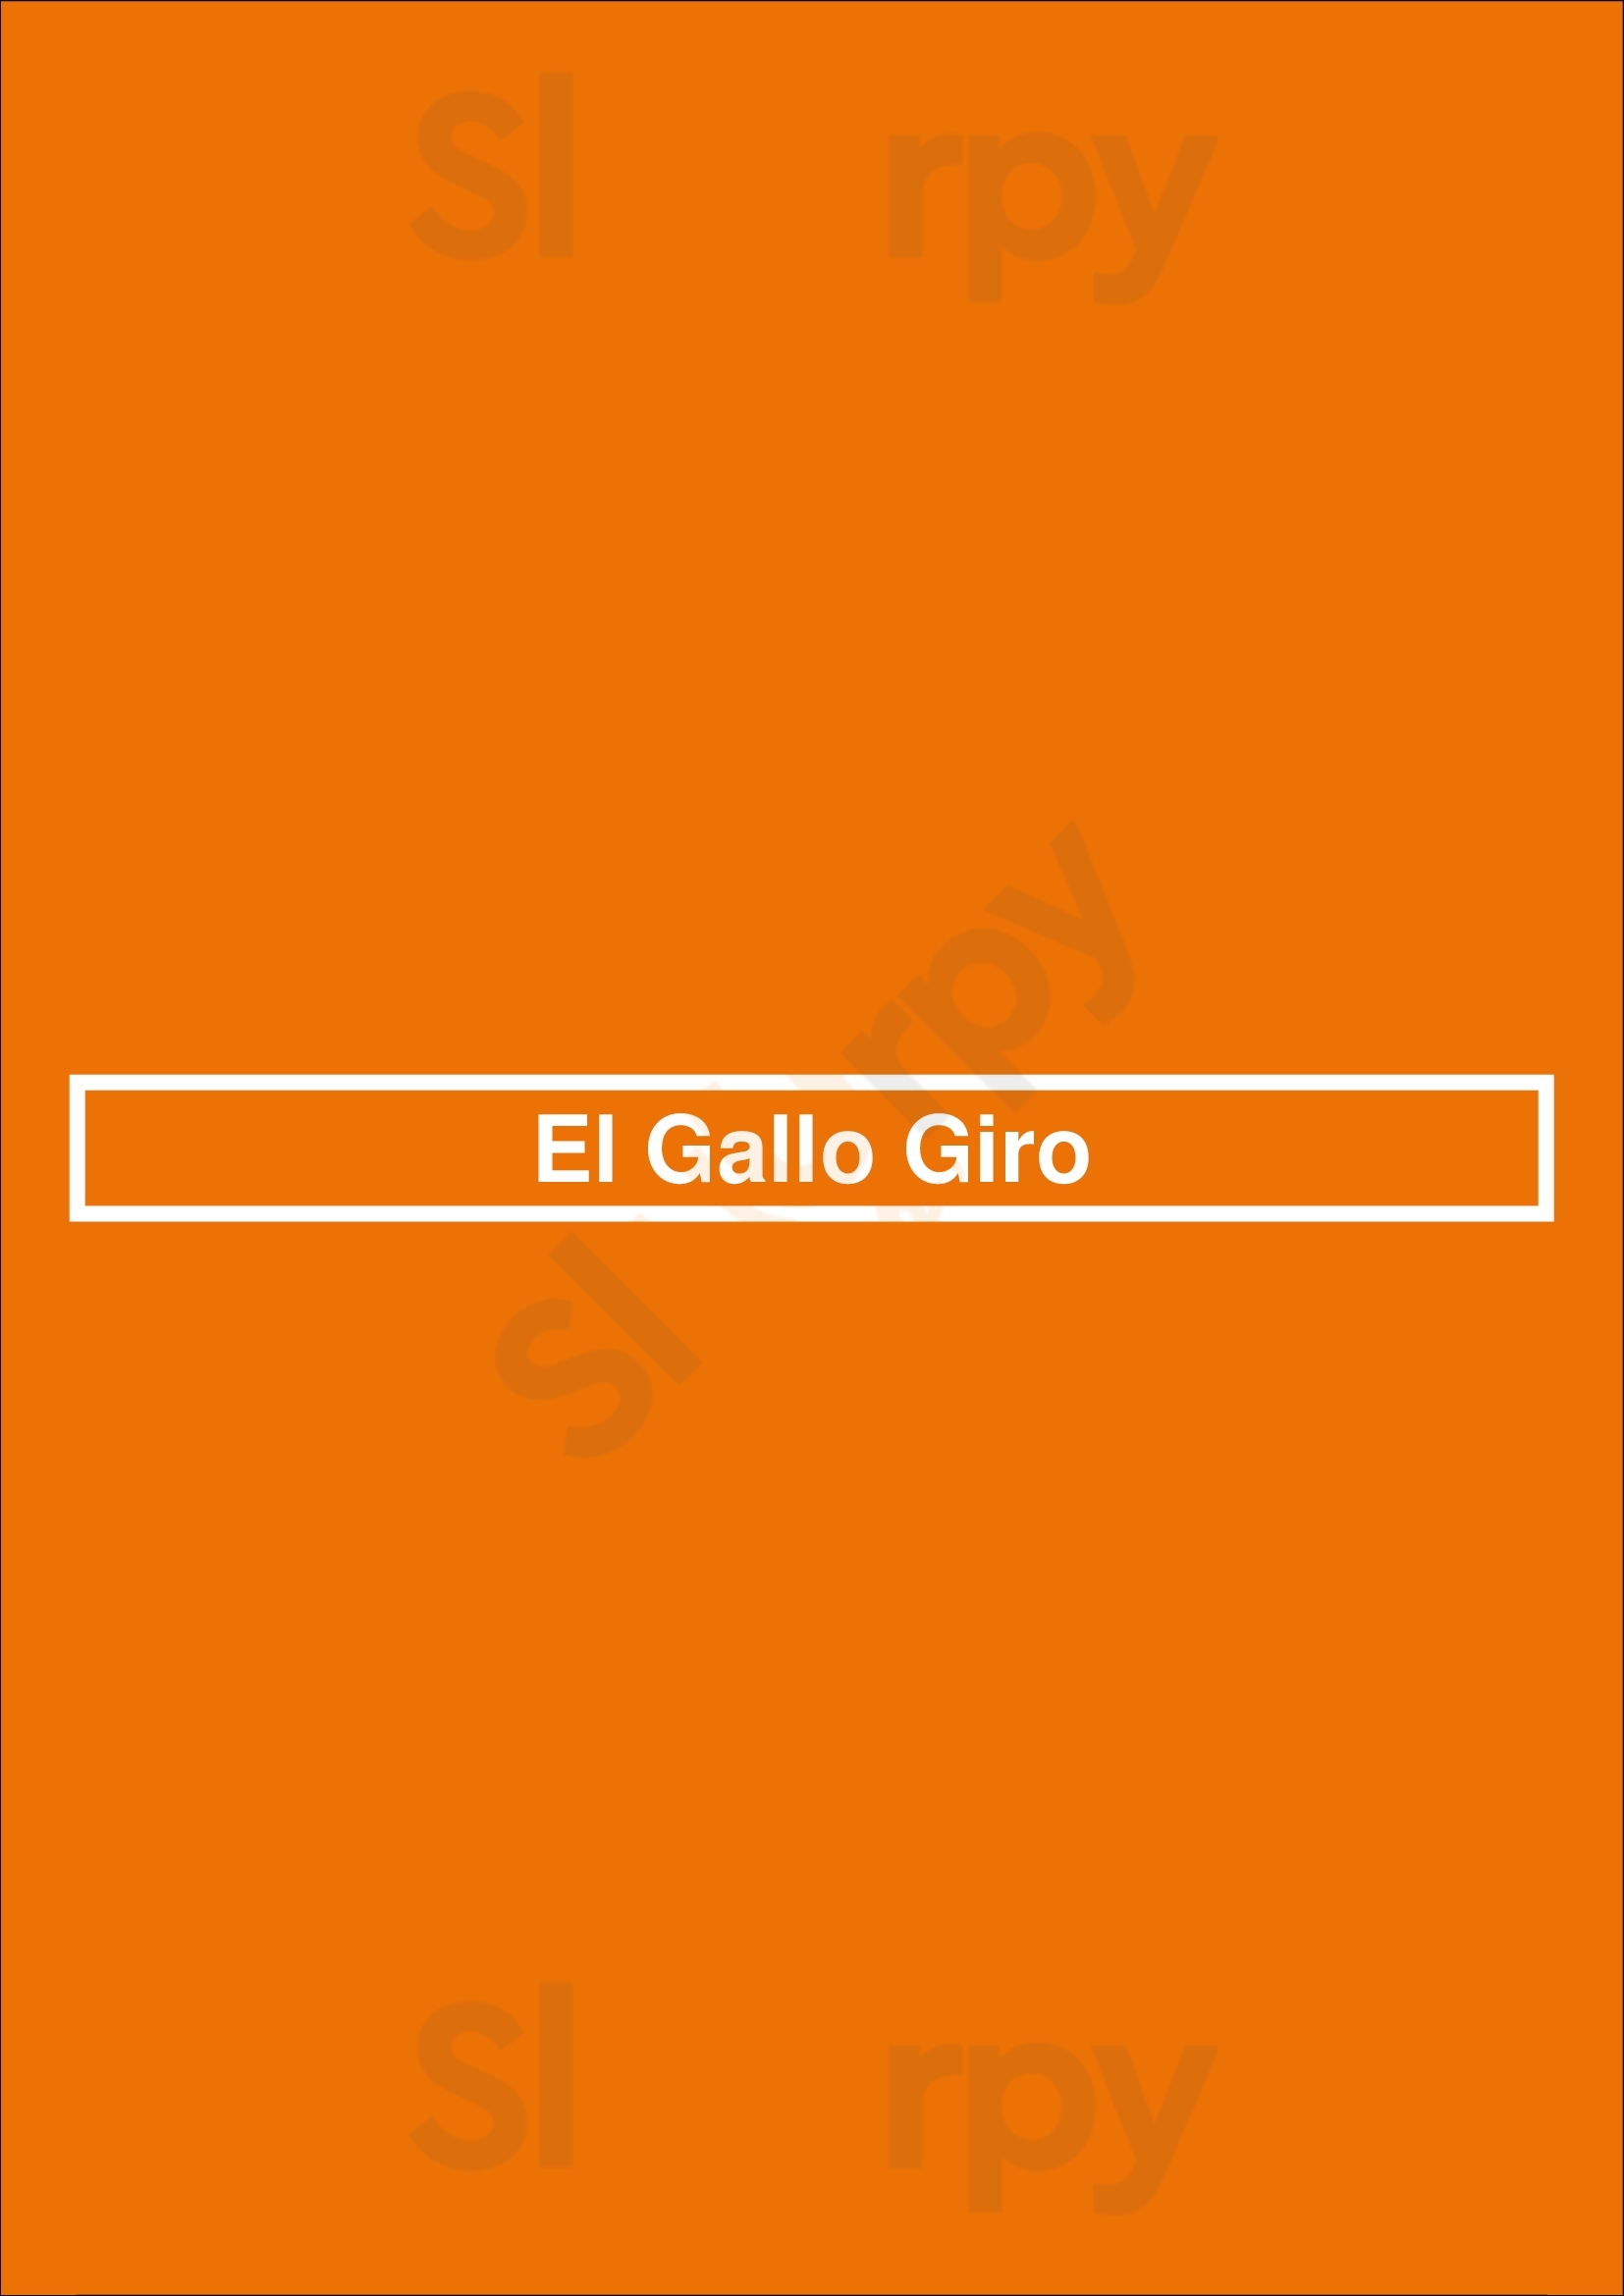 El Gallo Giro Los Angeles Menu - 1